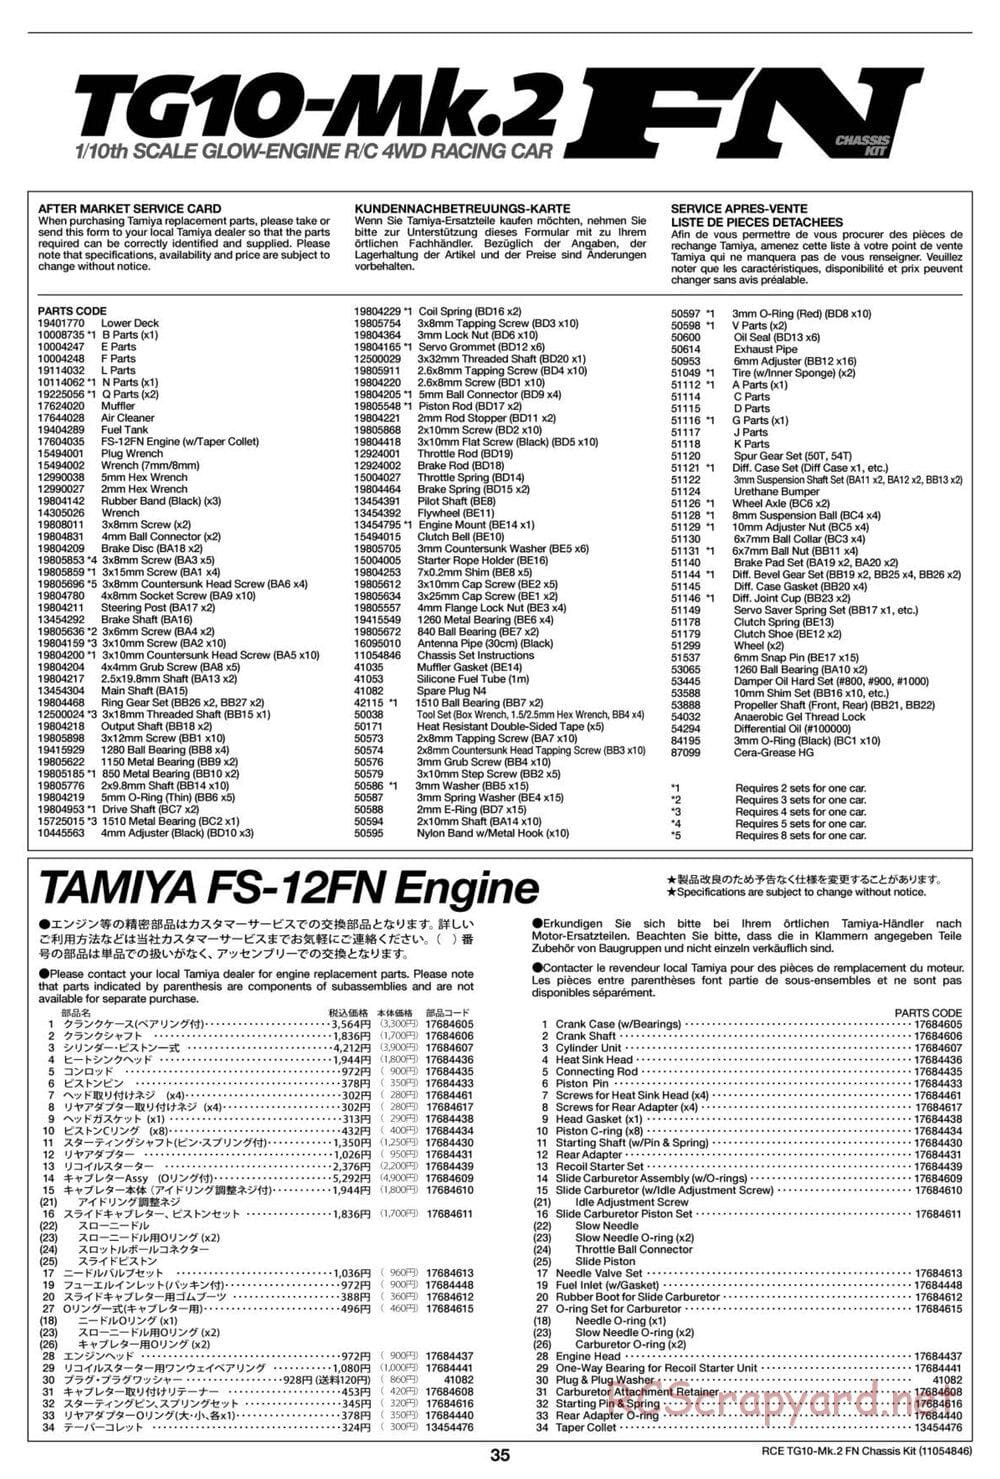 Tamiya - TG10 Mk.2 FN Chassis - Manual - Page 35